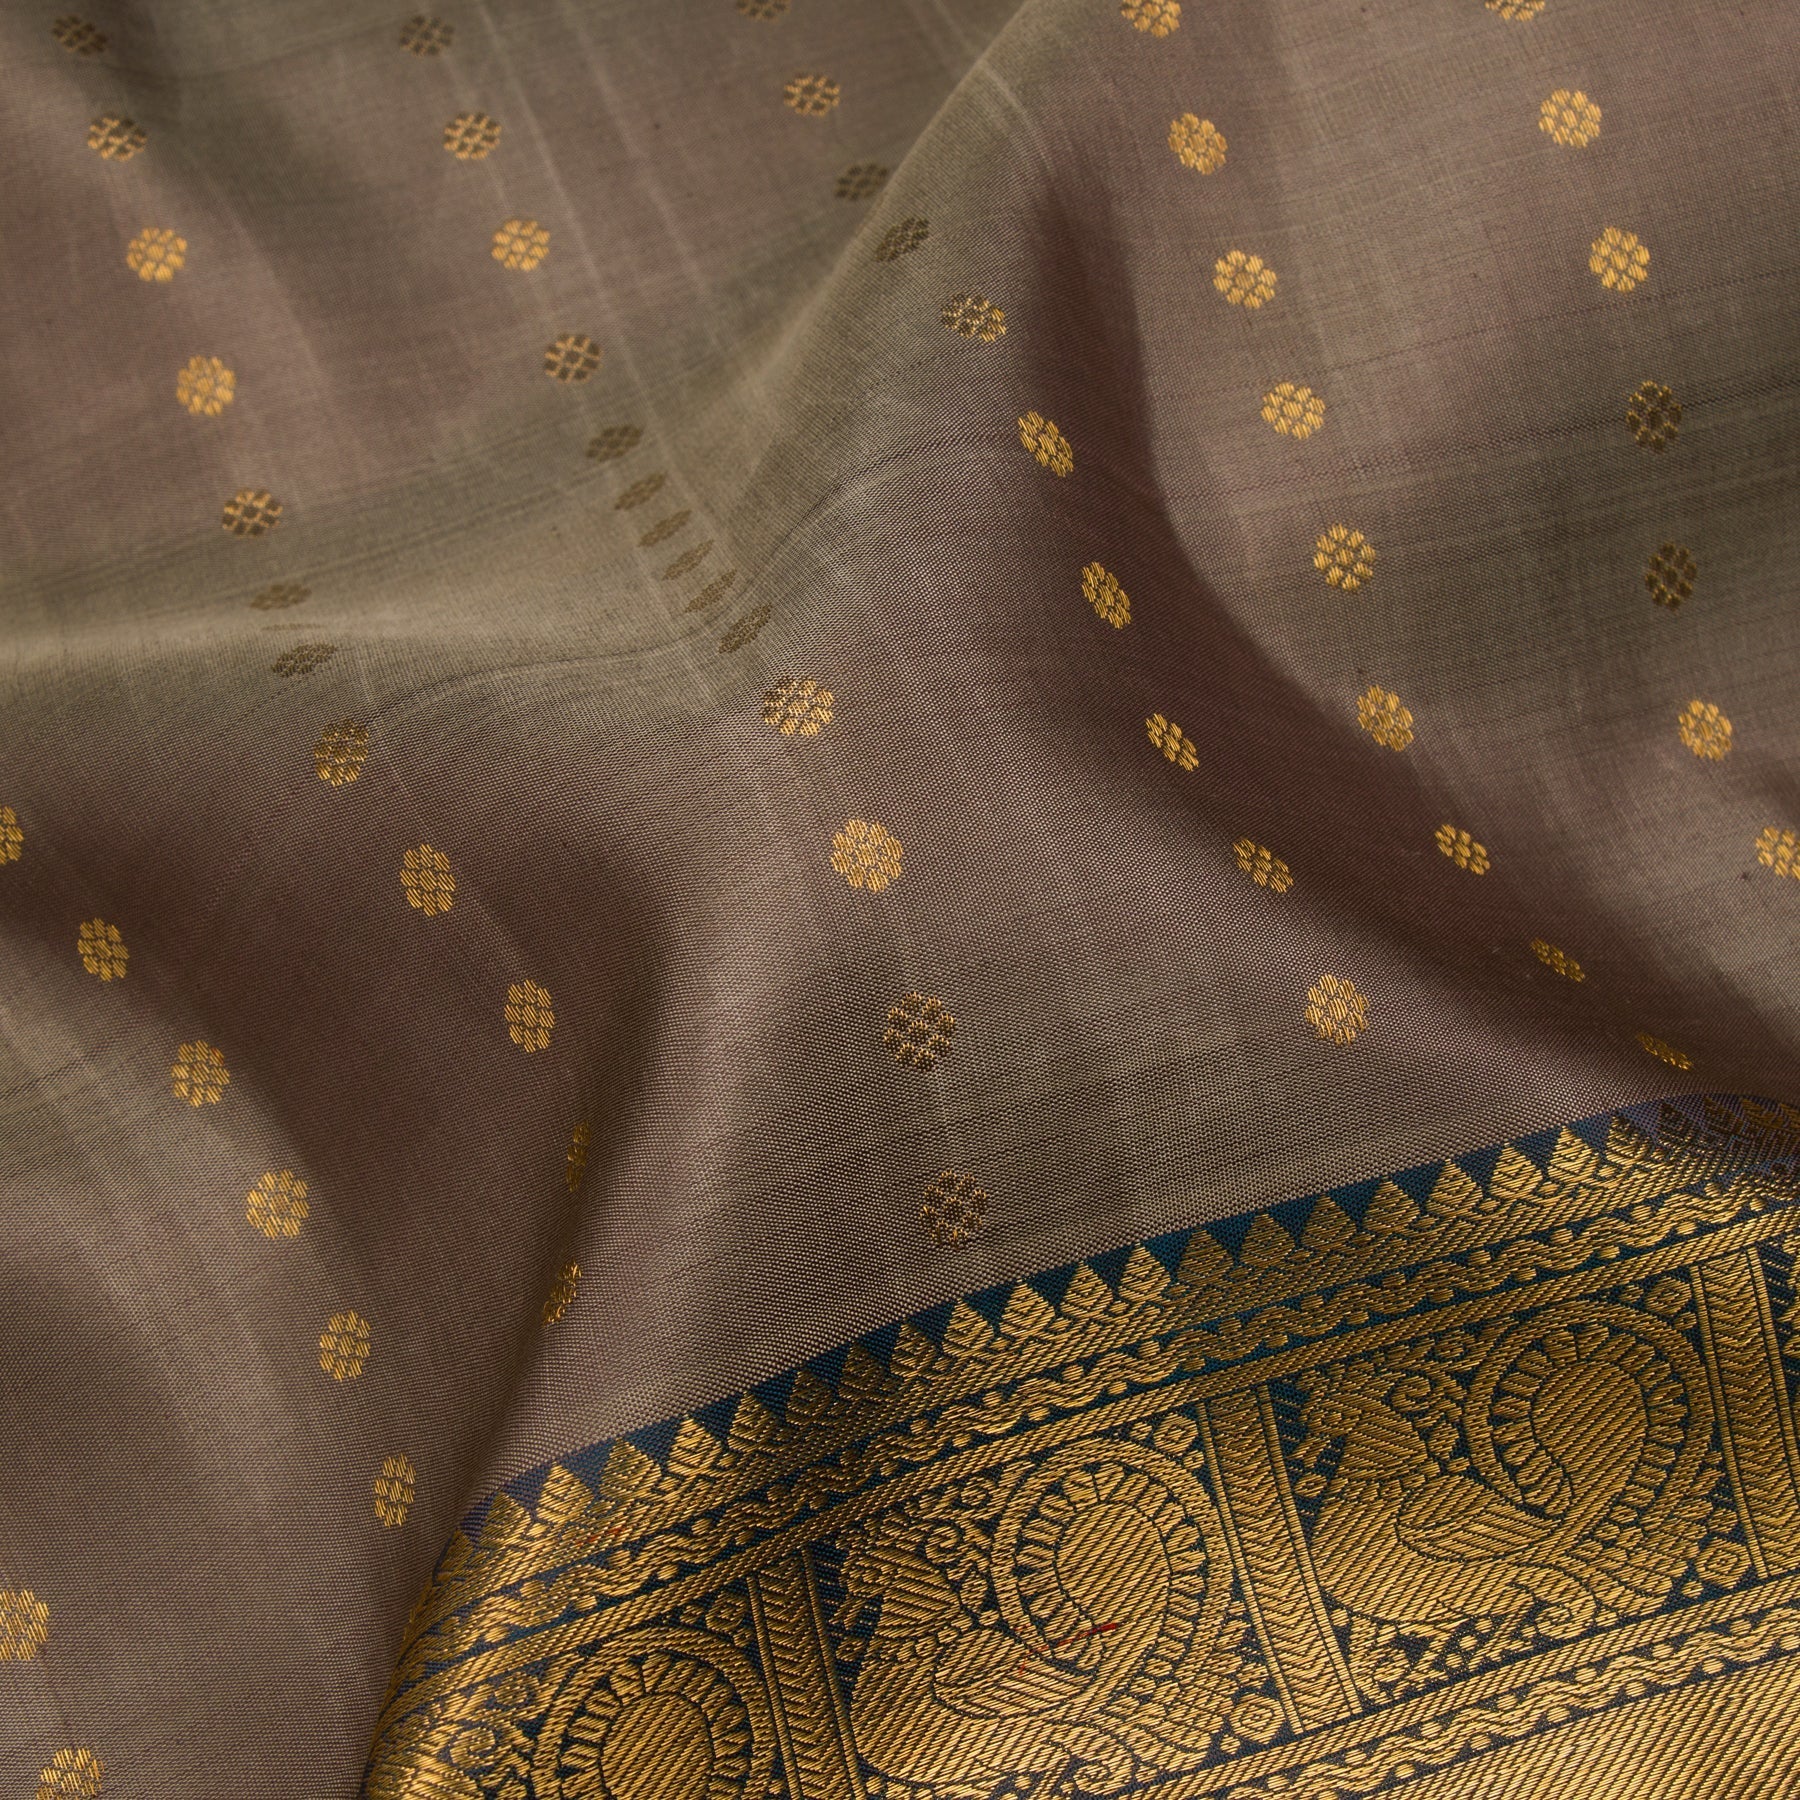 Kanakavalli Kanjivaram Silk Sari 23-595-HS001-00440 - Fabric View